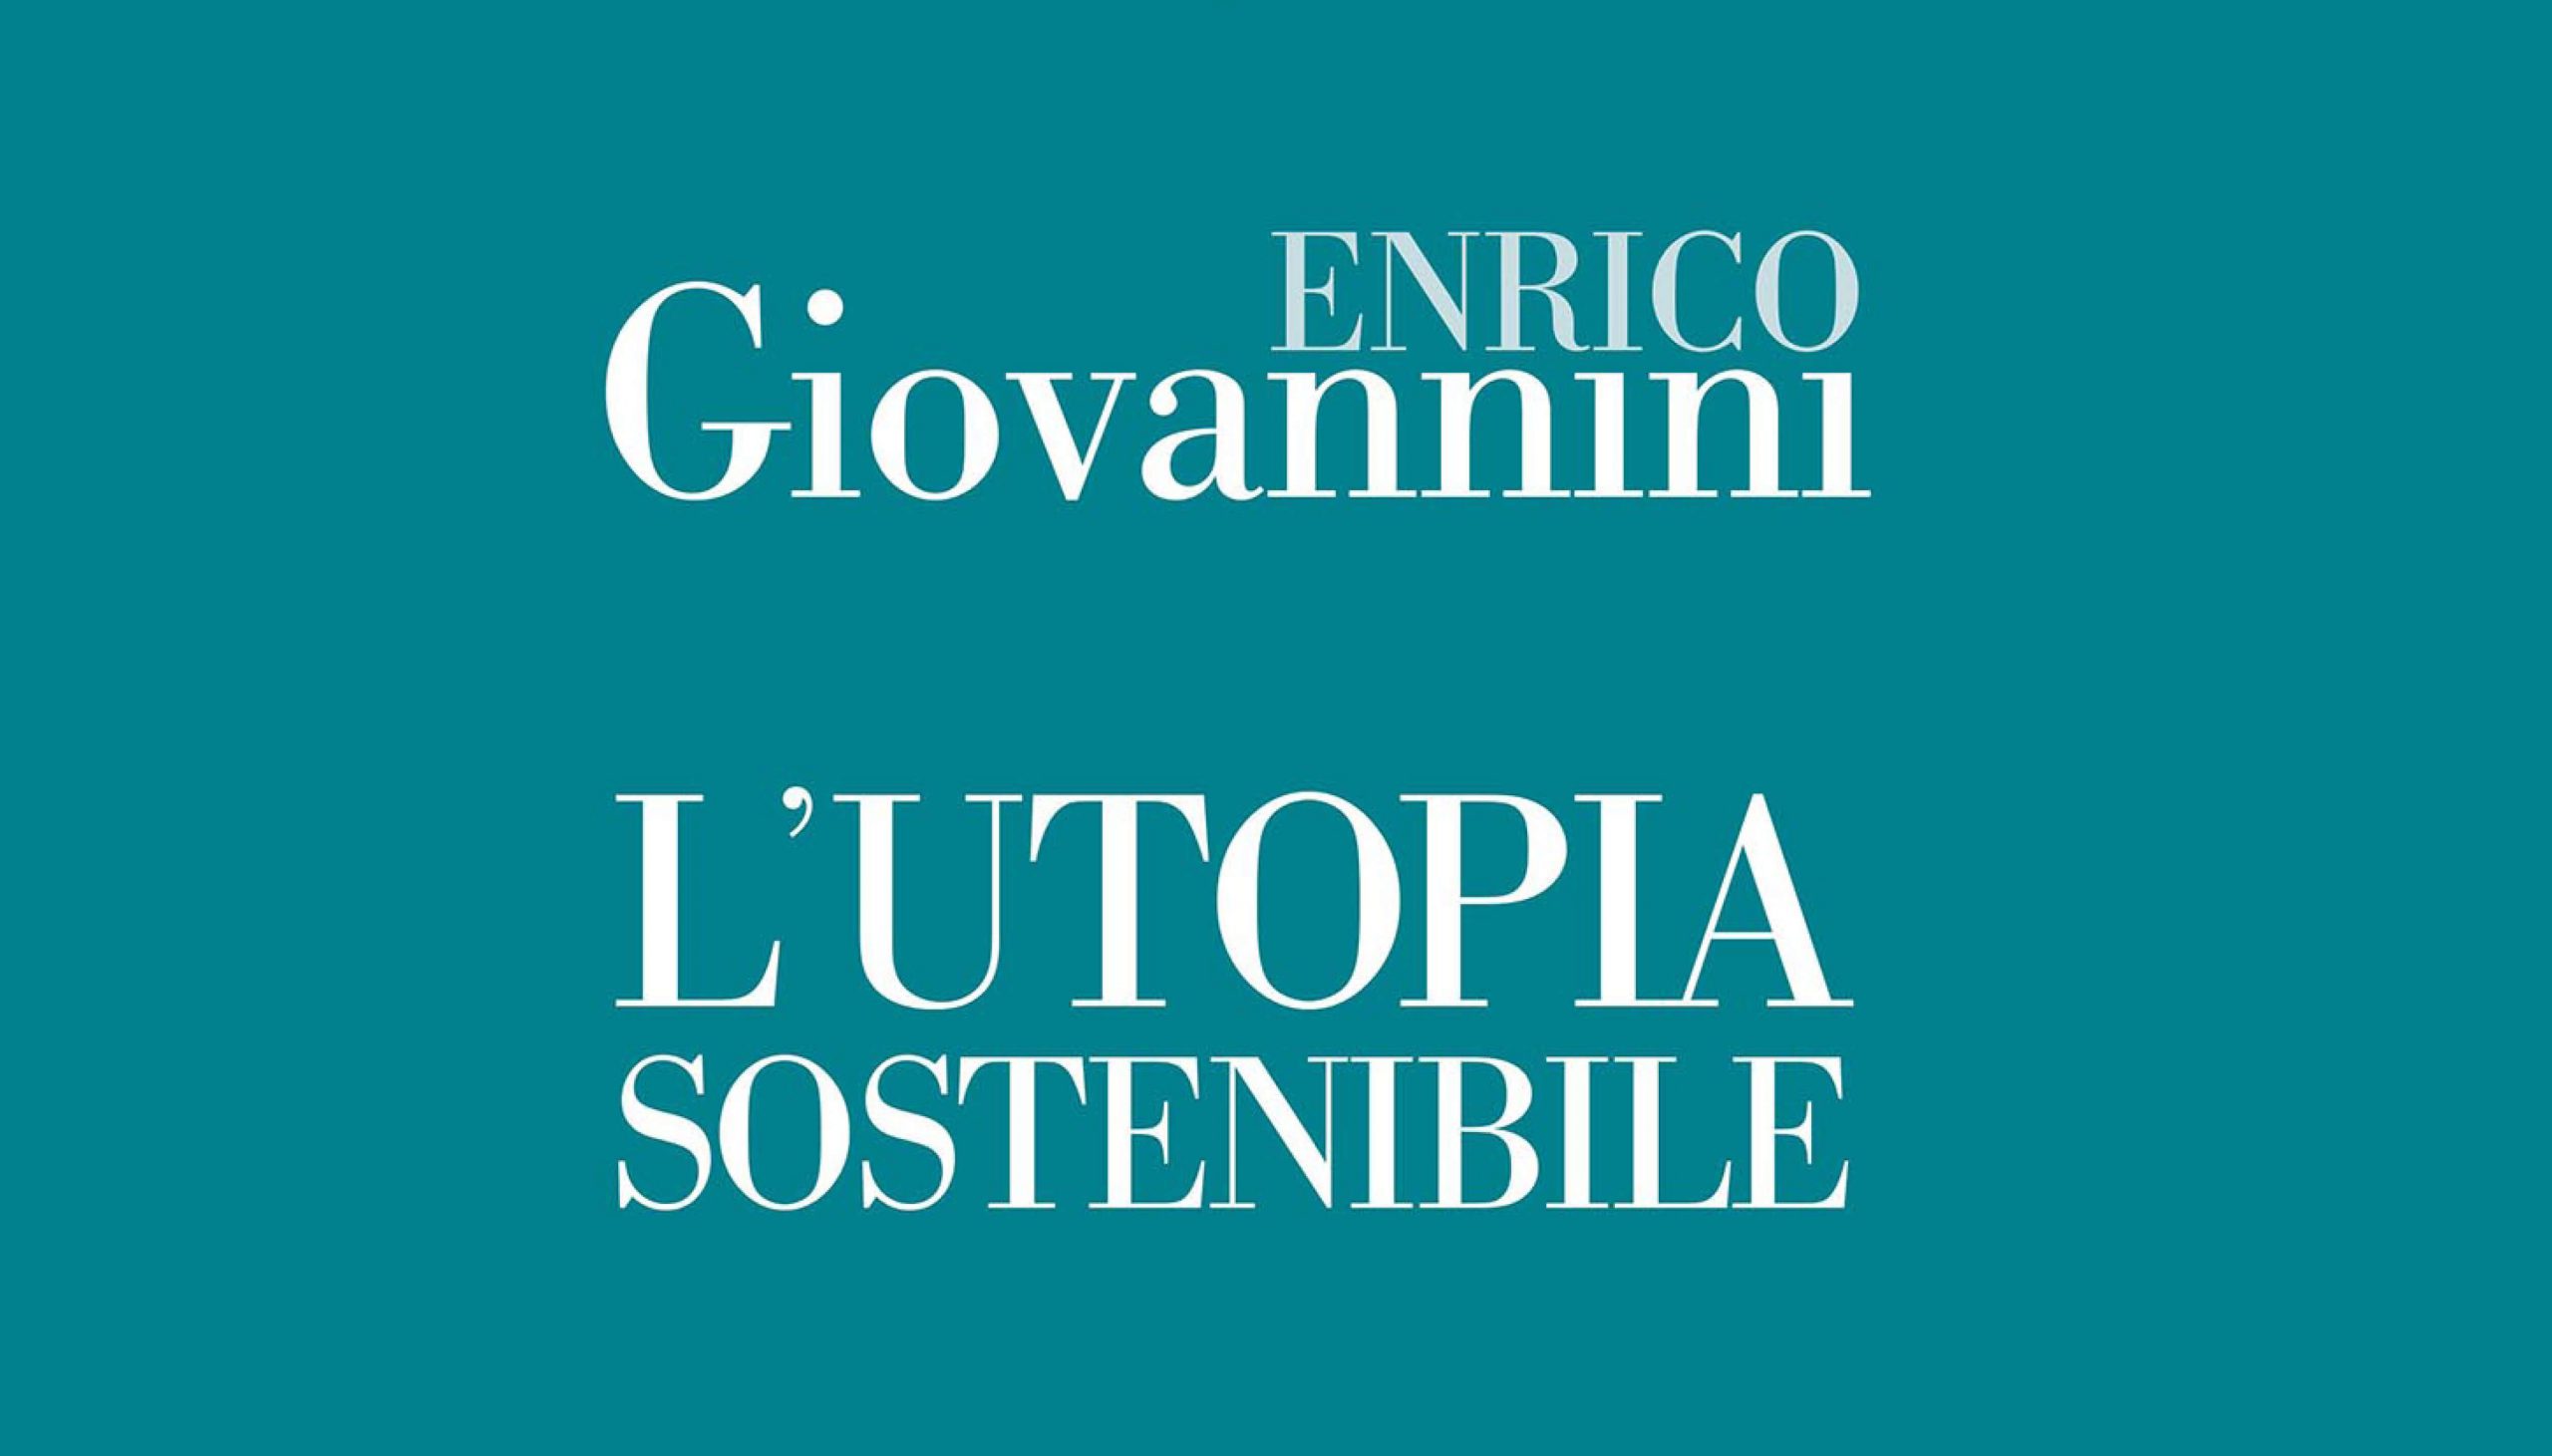 Enrico Giovannini, “L’utopia sostenibile”